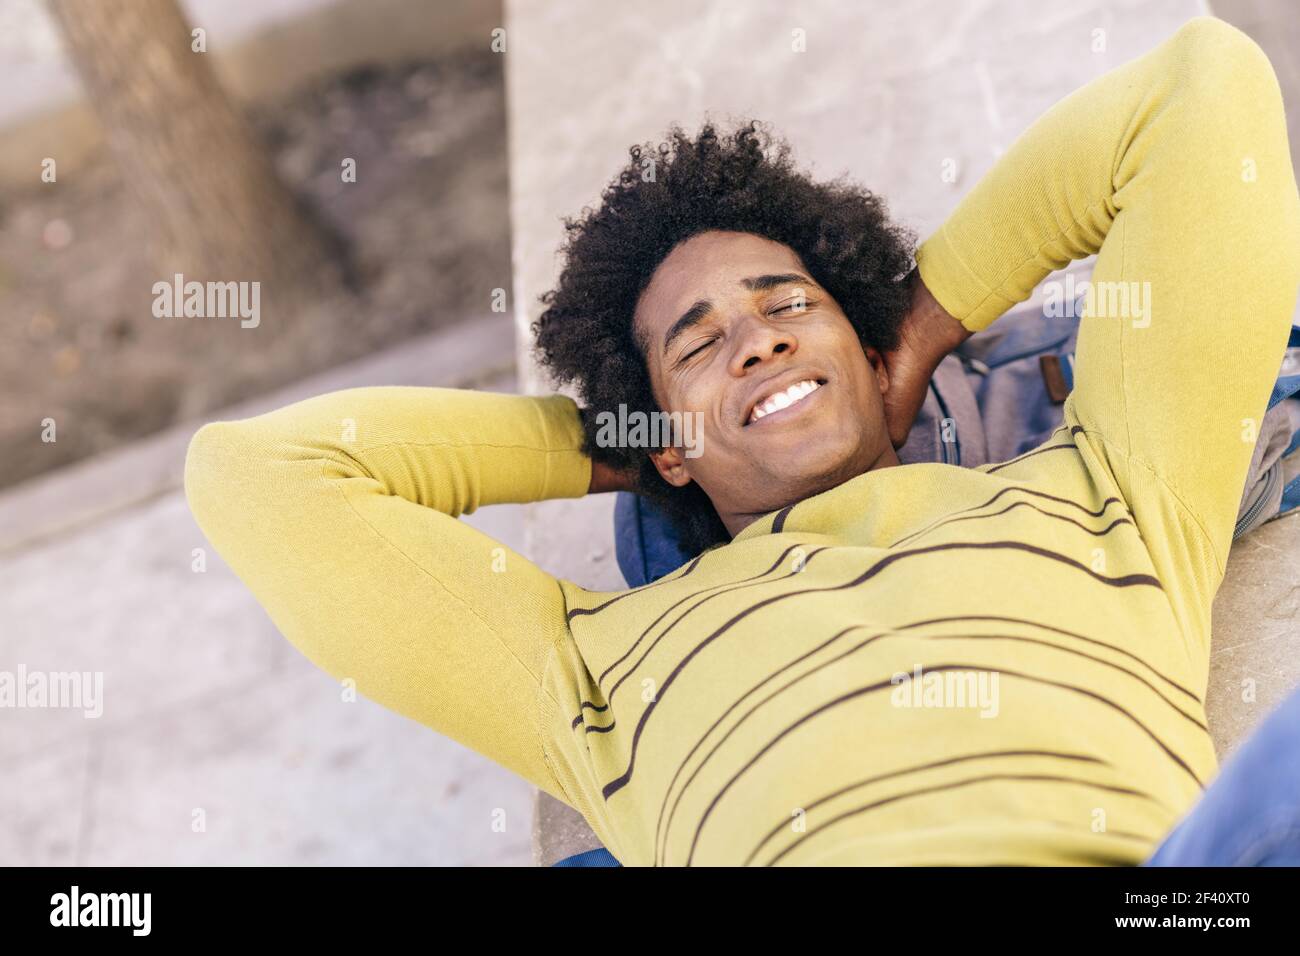 Touriste noir cubain avec des cheveux afro couchés sur le sol, sur son sac à dos, se reposant de son voyage à Grenade, Andalousie, Espagne. Touriste noir avec des cheveux afro couchés au sol à l'extérieur. Banque D'Images